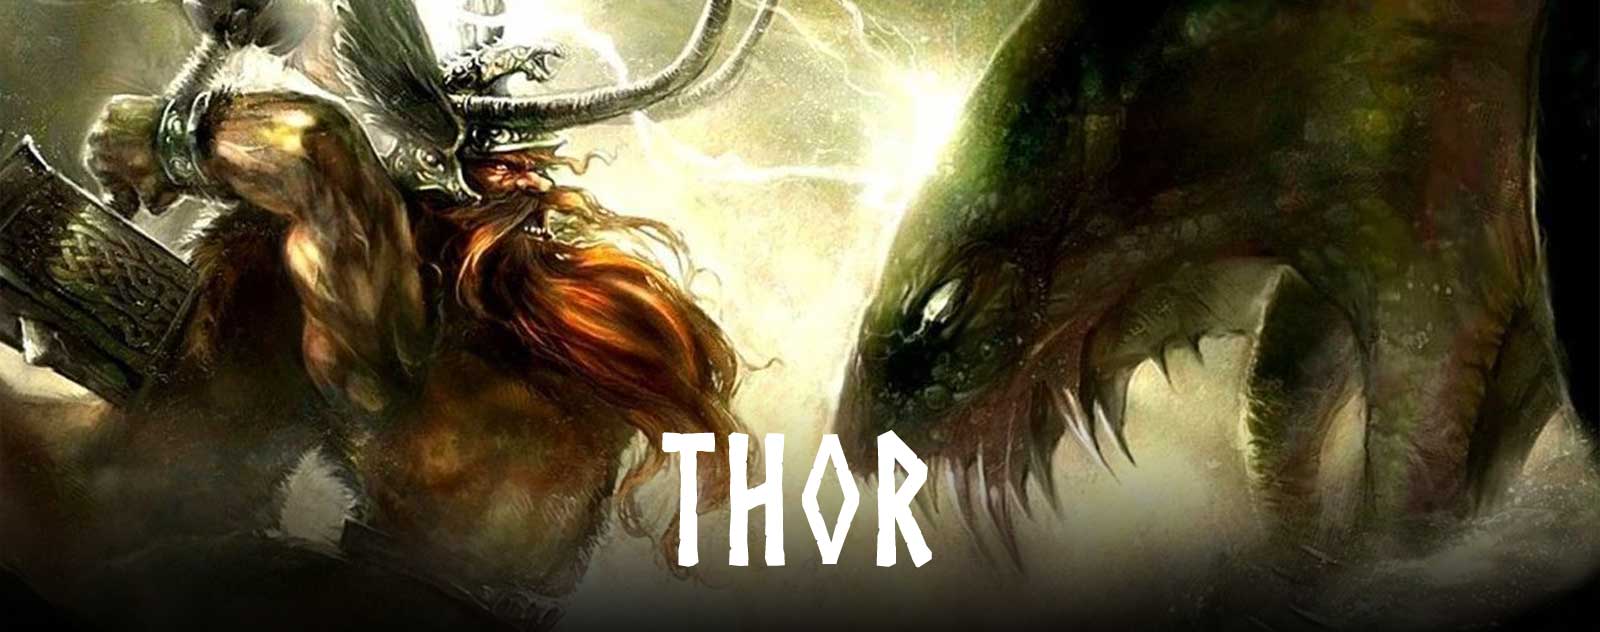 Thor dieu viking